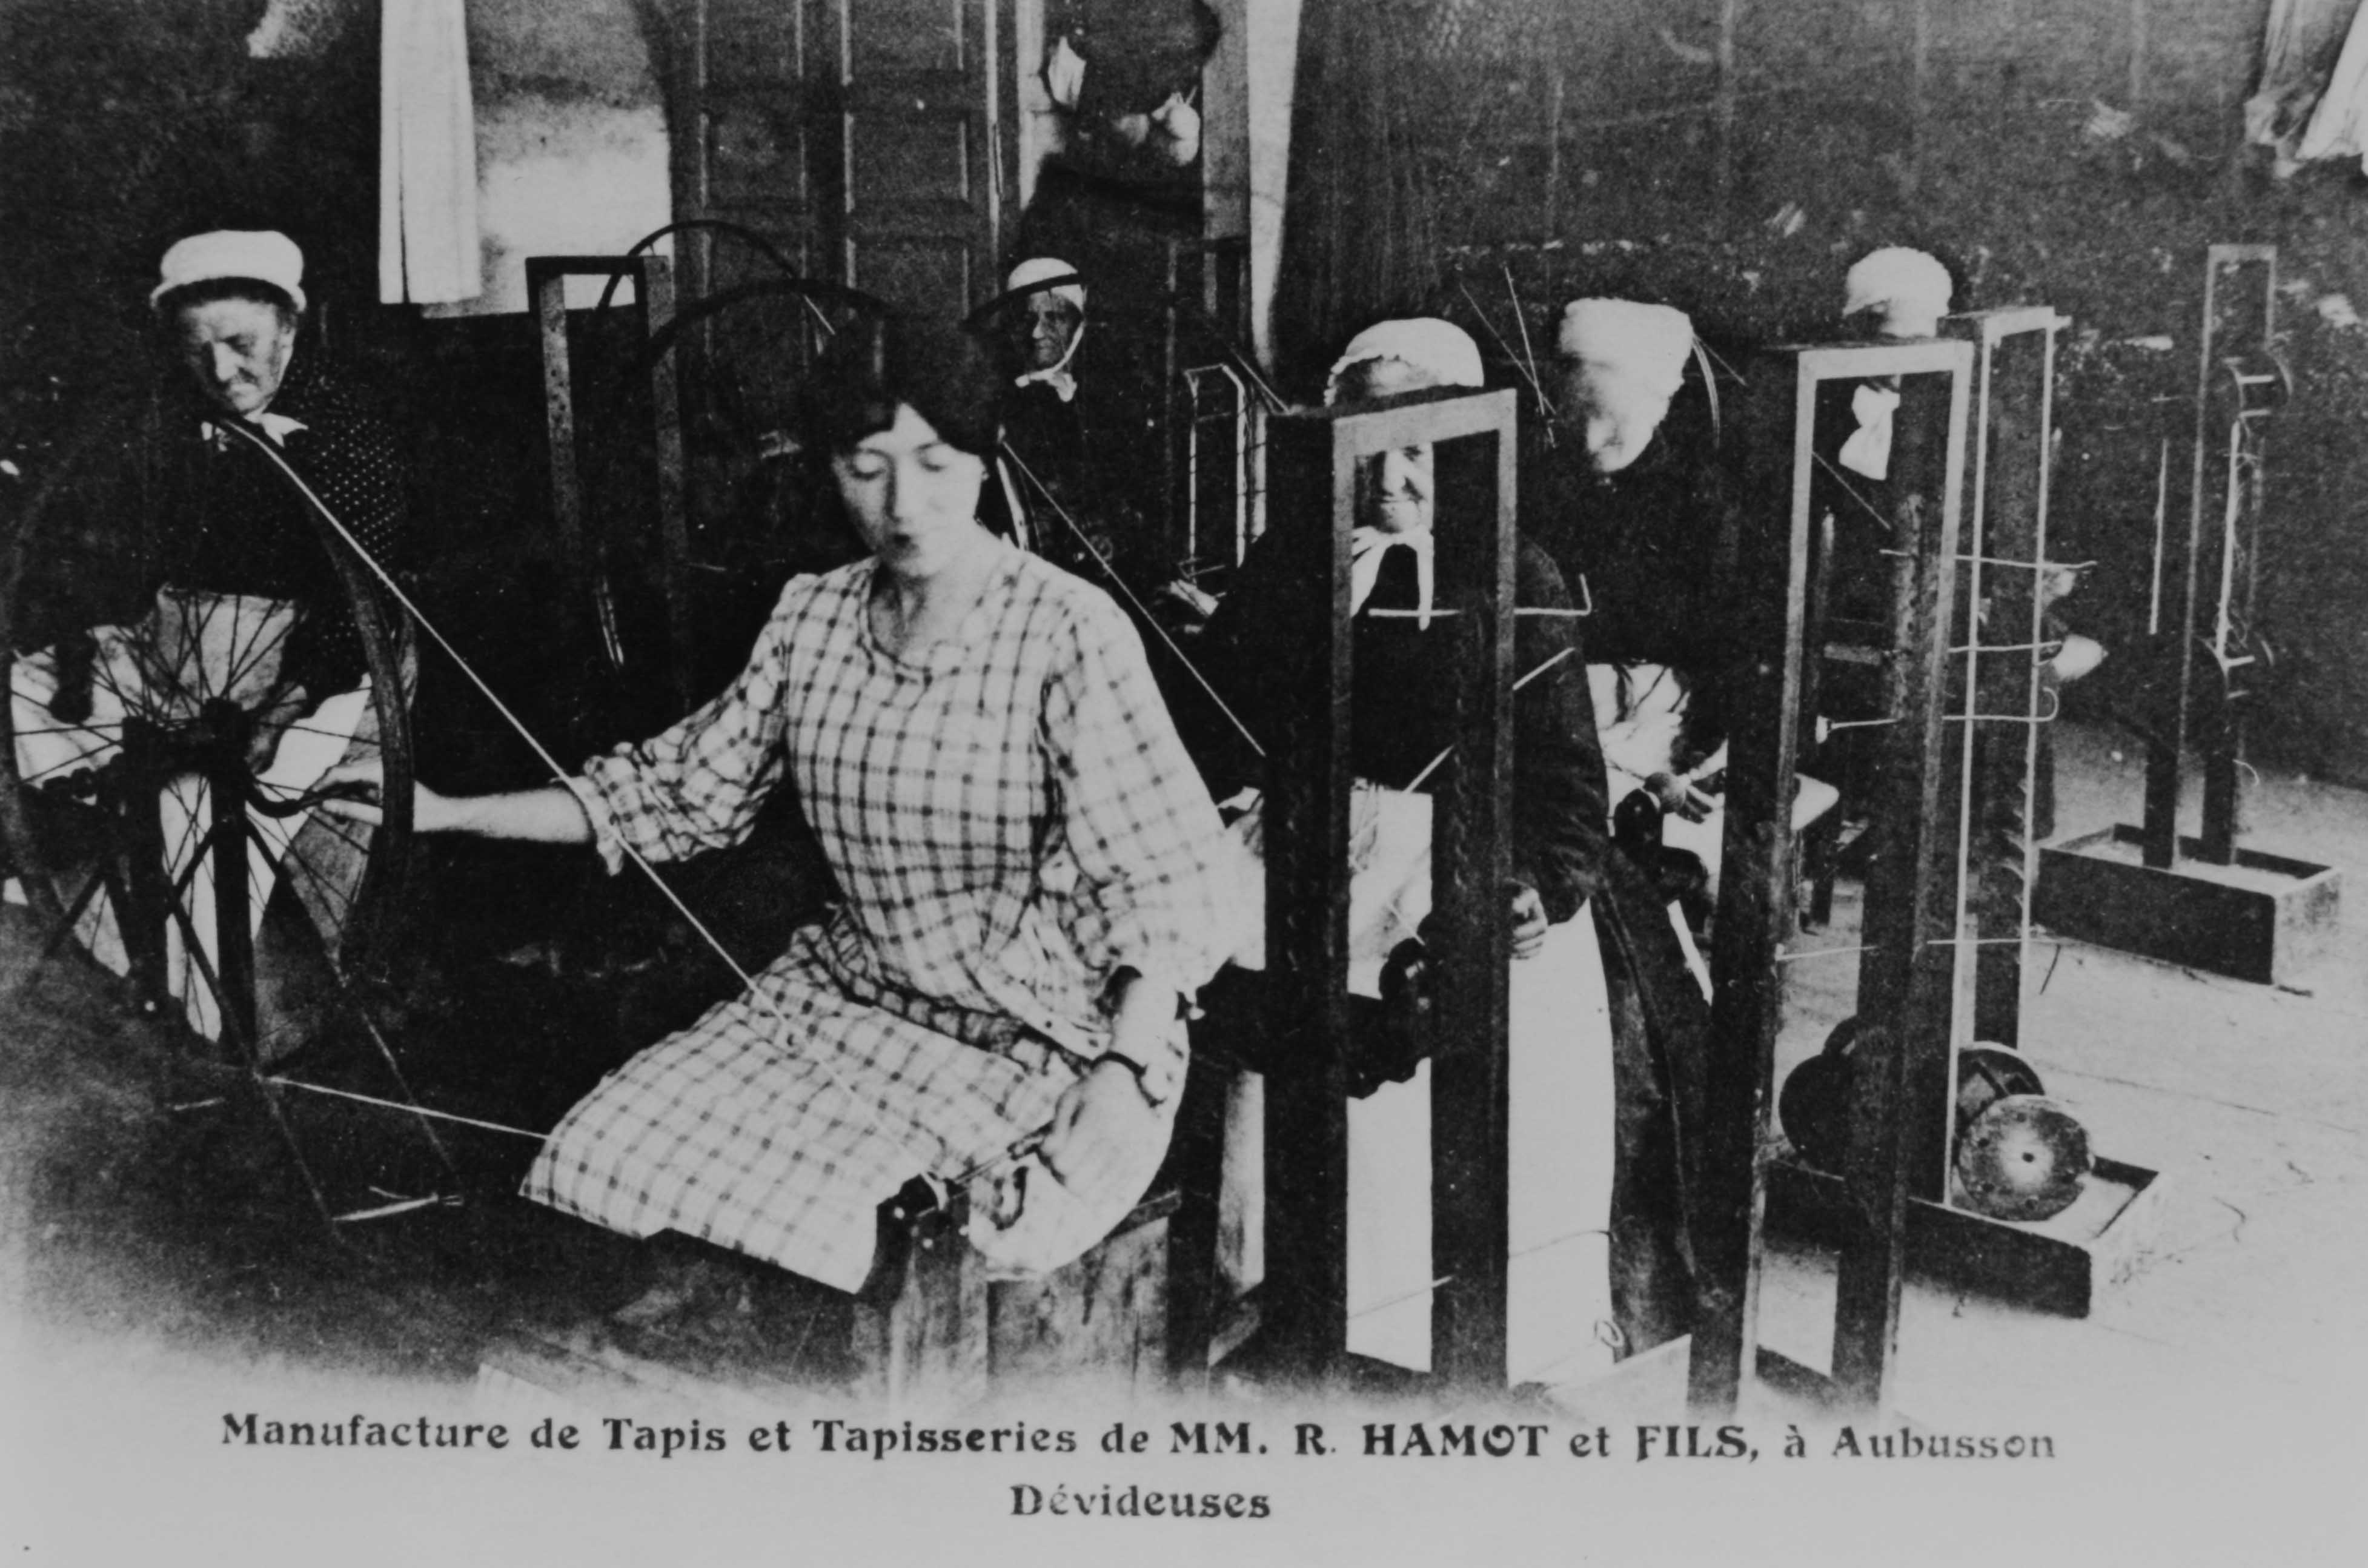 Carte postale (1er quart 20e siècle) : Dévideuses au travail (Aubusson, centre de documentation du Musée départemental de la Tapisserie) 